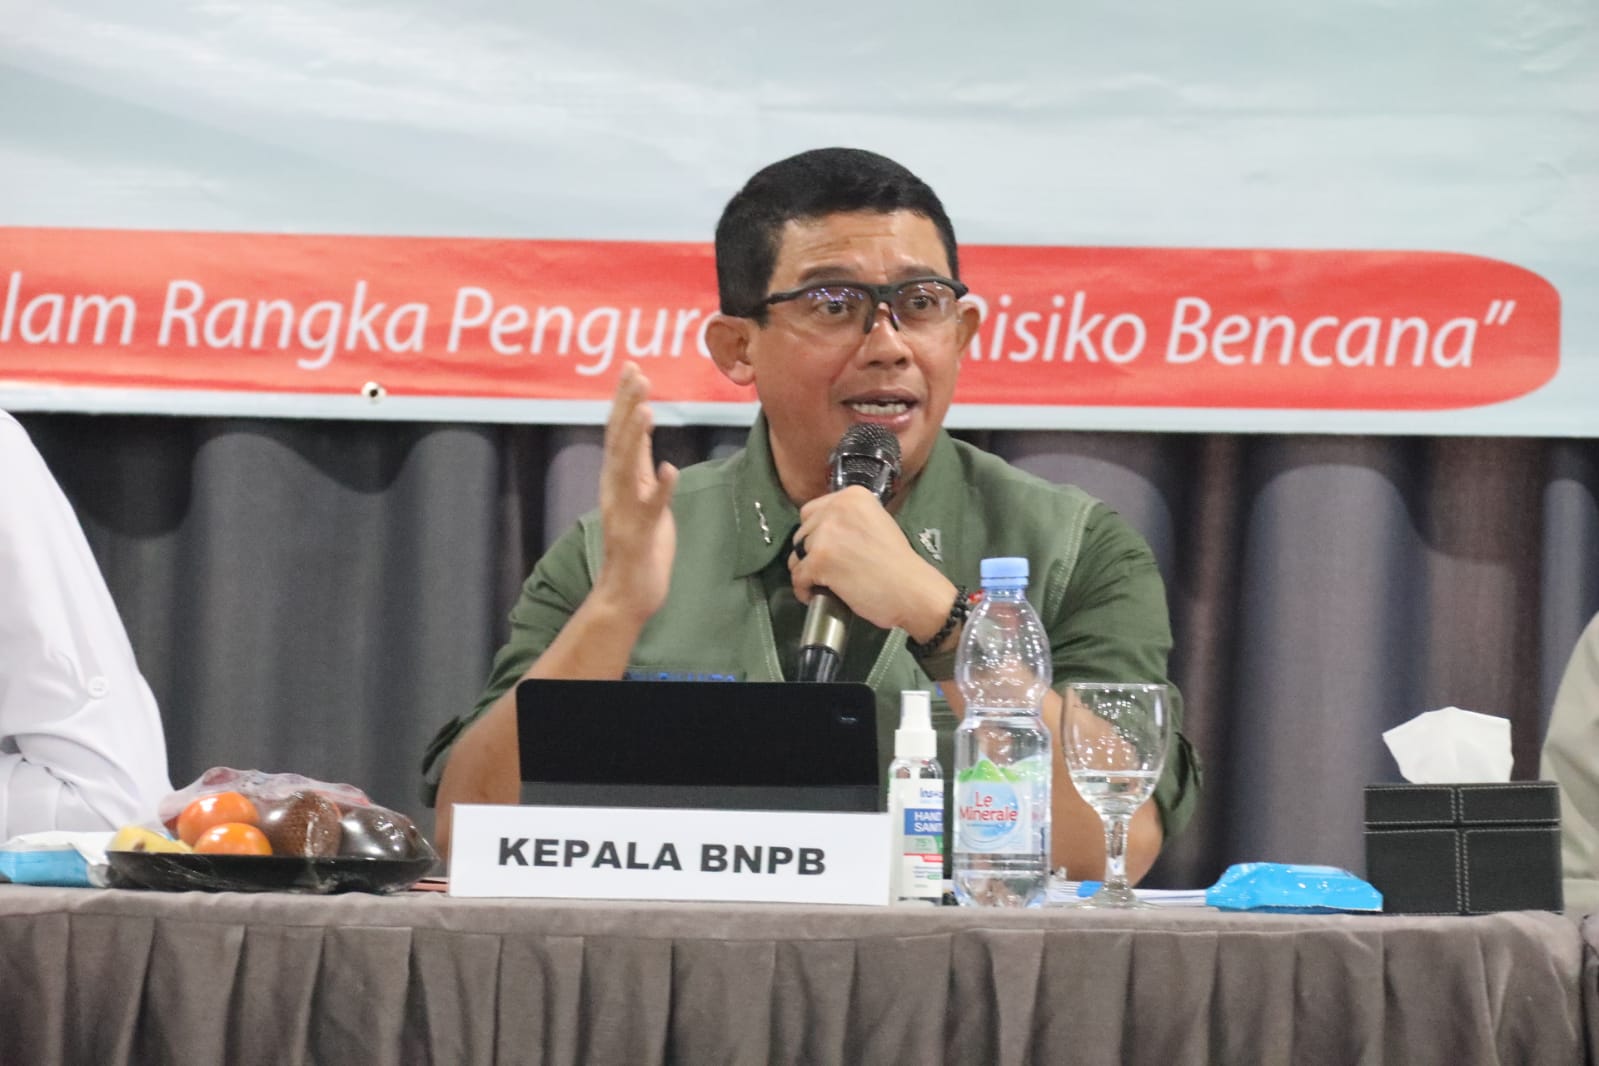 Kepala BNPB Letjen TNI Suharyanto (rompi hijau kemeja hijau) saat memimpin Rapat Koordinasi Penyelenggaraan Rehabilitasi dan Rekonstruksi wilayah Provinsi Jawa Barat di Kabupaten Subang, Jawa Barat, pada Kamis (24/8).